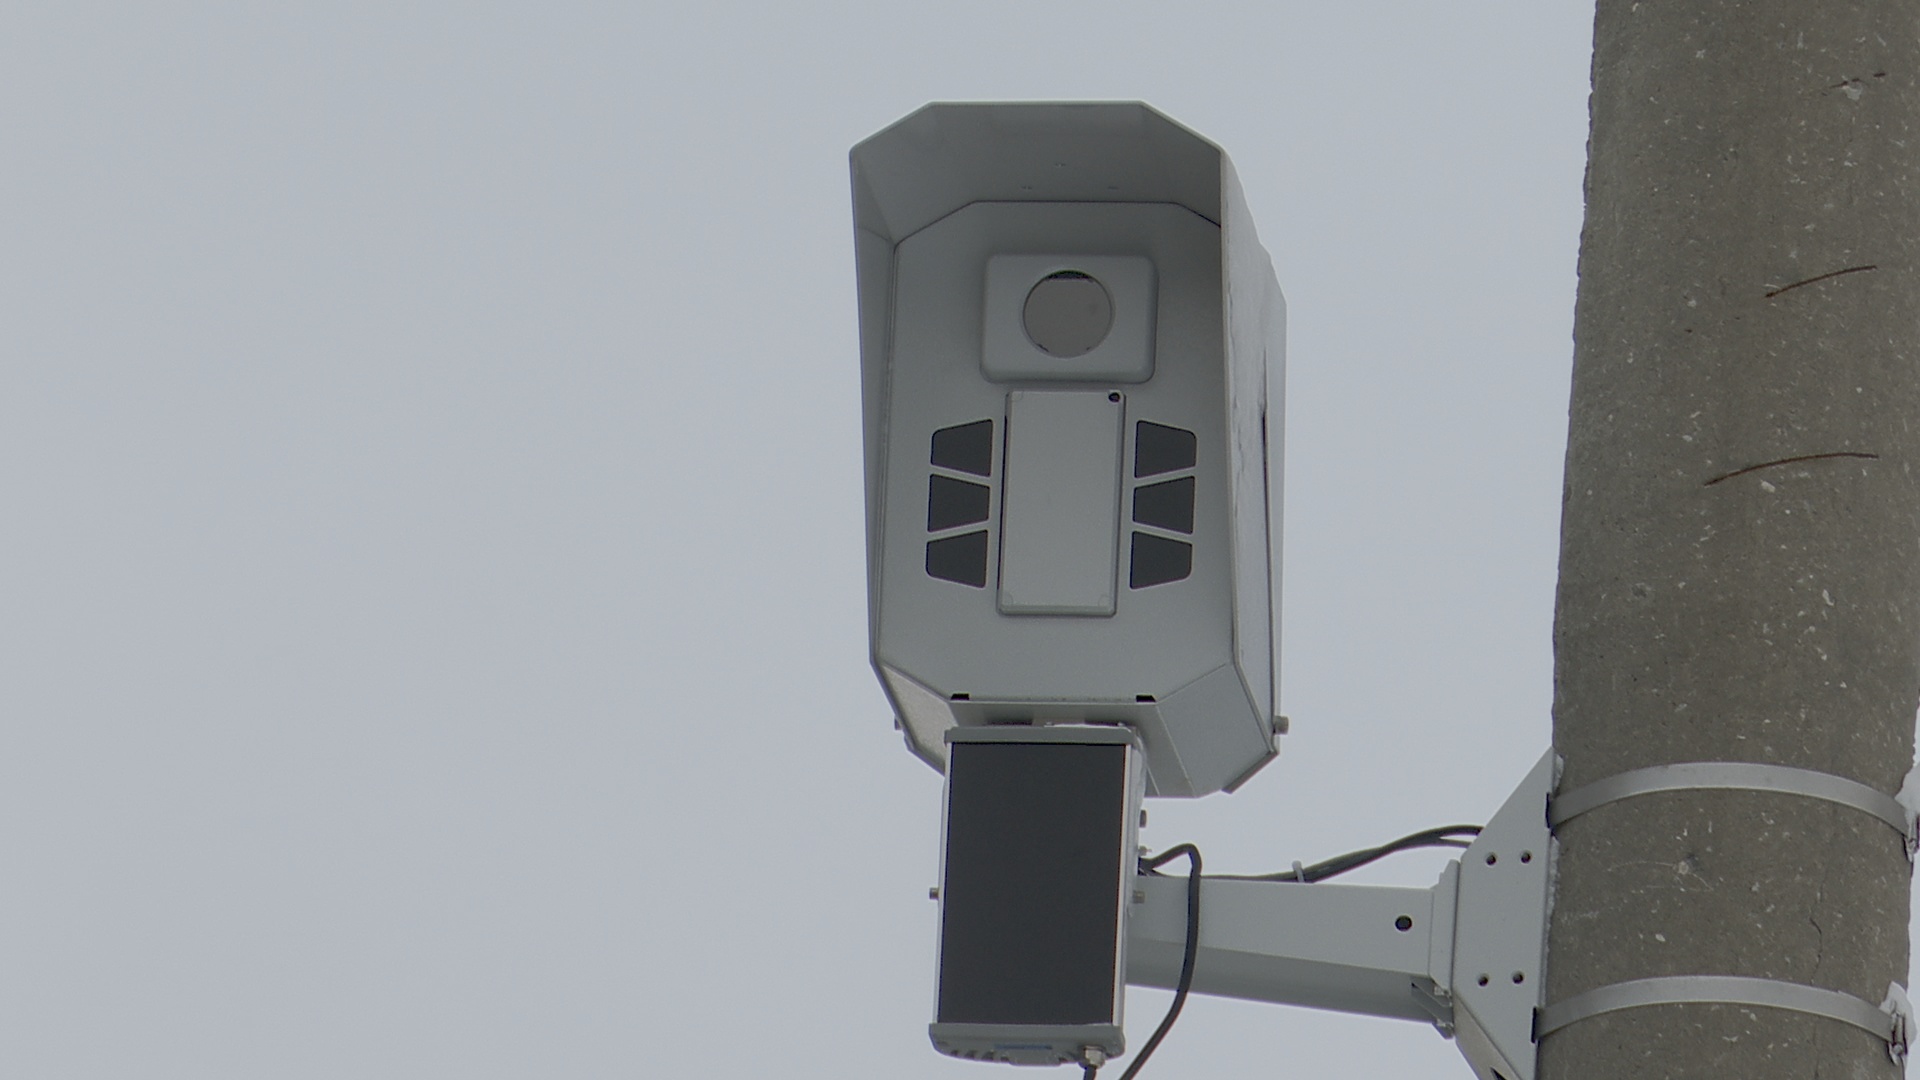 Как выглядят камеры видеофиксации: как устроена система фото- и видеофиксации нарушений ПДД